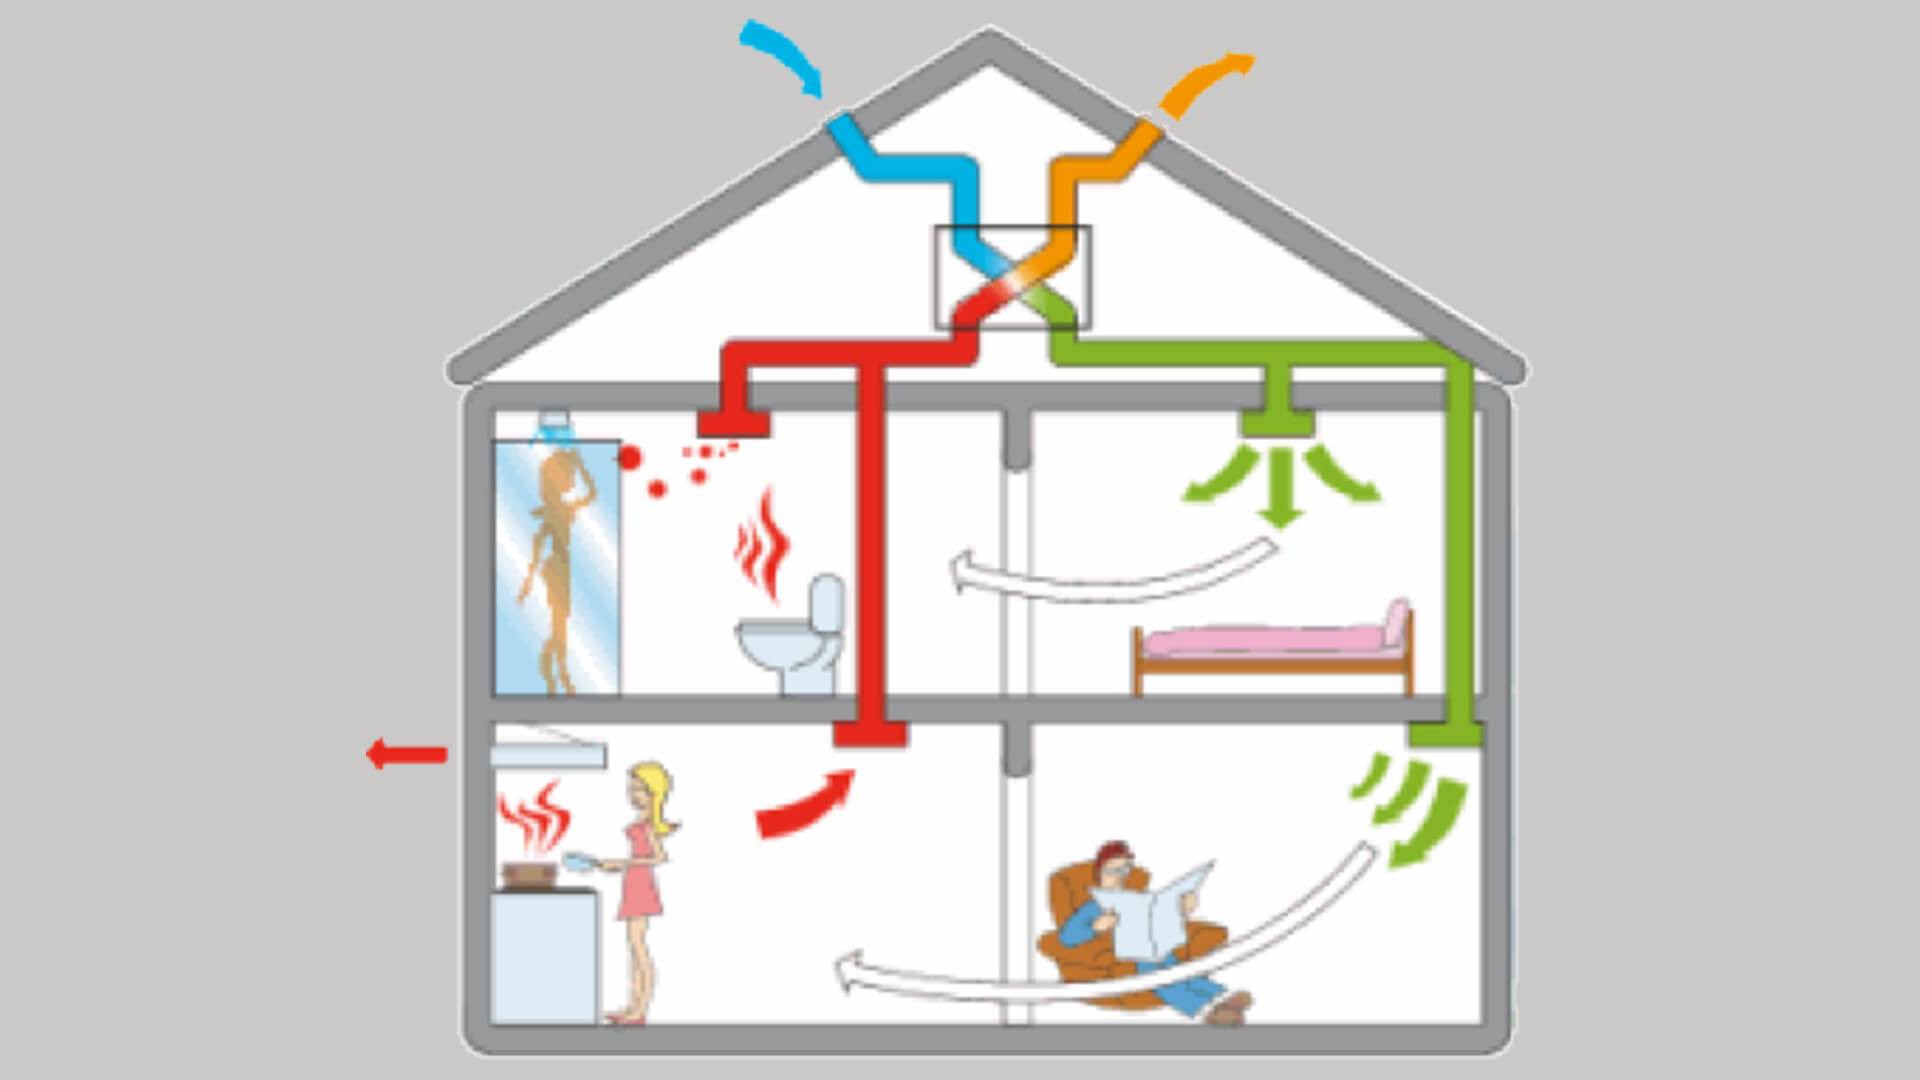 Вентиляция мансарды в частном доме: как сделать вентиляцию через фронтоны и слуховые окна